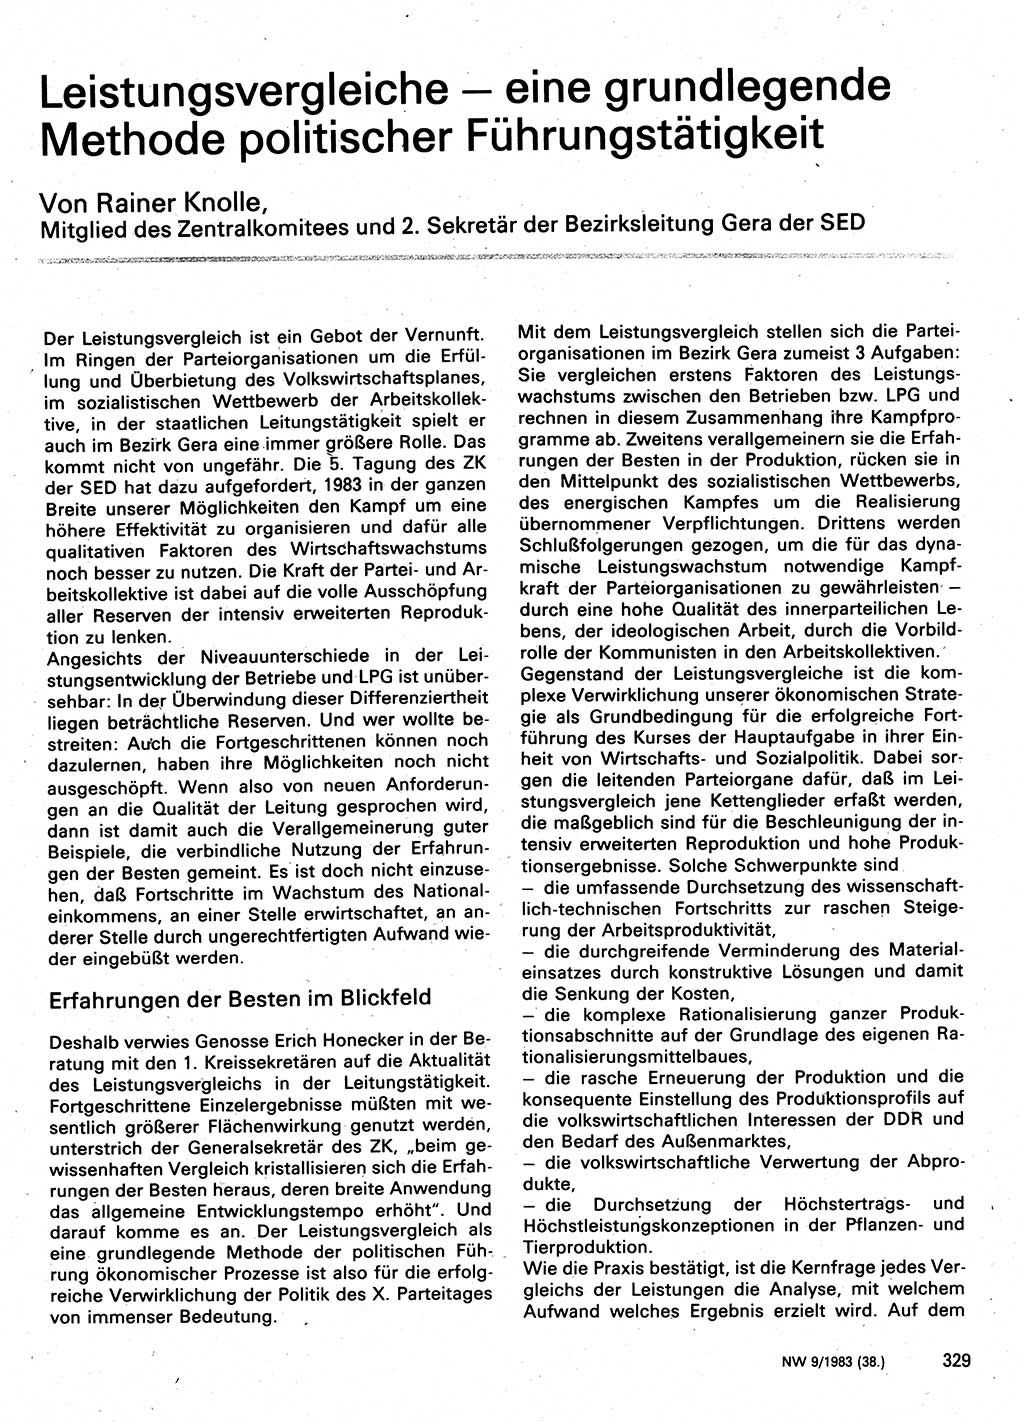 Neuer Weg (NW), Organ des Zentralkomitees (ZK) der SED (Sozialistische Einheitspartei Deutschlands) für Fragen des Parteilebens, 38. Jahrgang [Deutsche Demokratische Republik (DDR)] 1983, Seite 329 (NW ZK SED DDR 1983, S. 329)